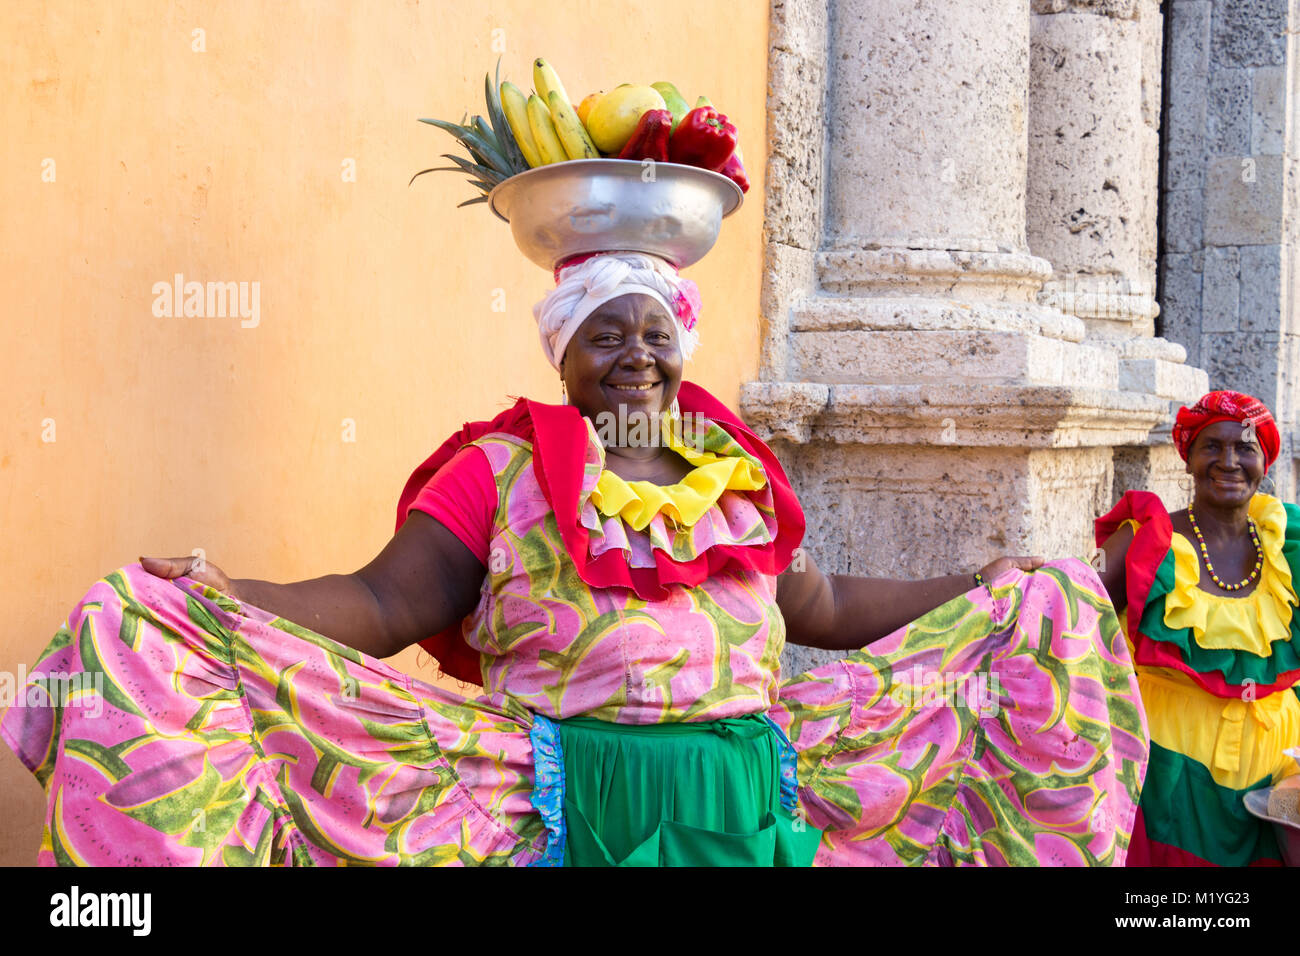 Cartagena, Colombia - Gennaio 23th, 2018: una donna palenquera con un cestello di metallo con frutti in posa mostrando il suo multicolor abito tradizionale all'ol Foto Stock